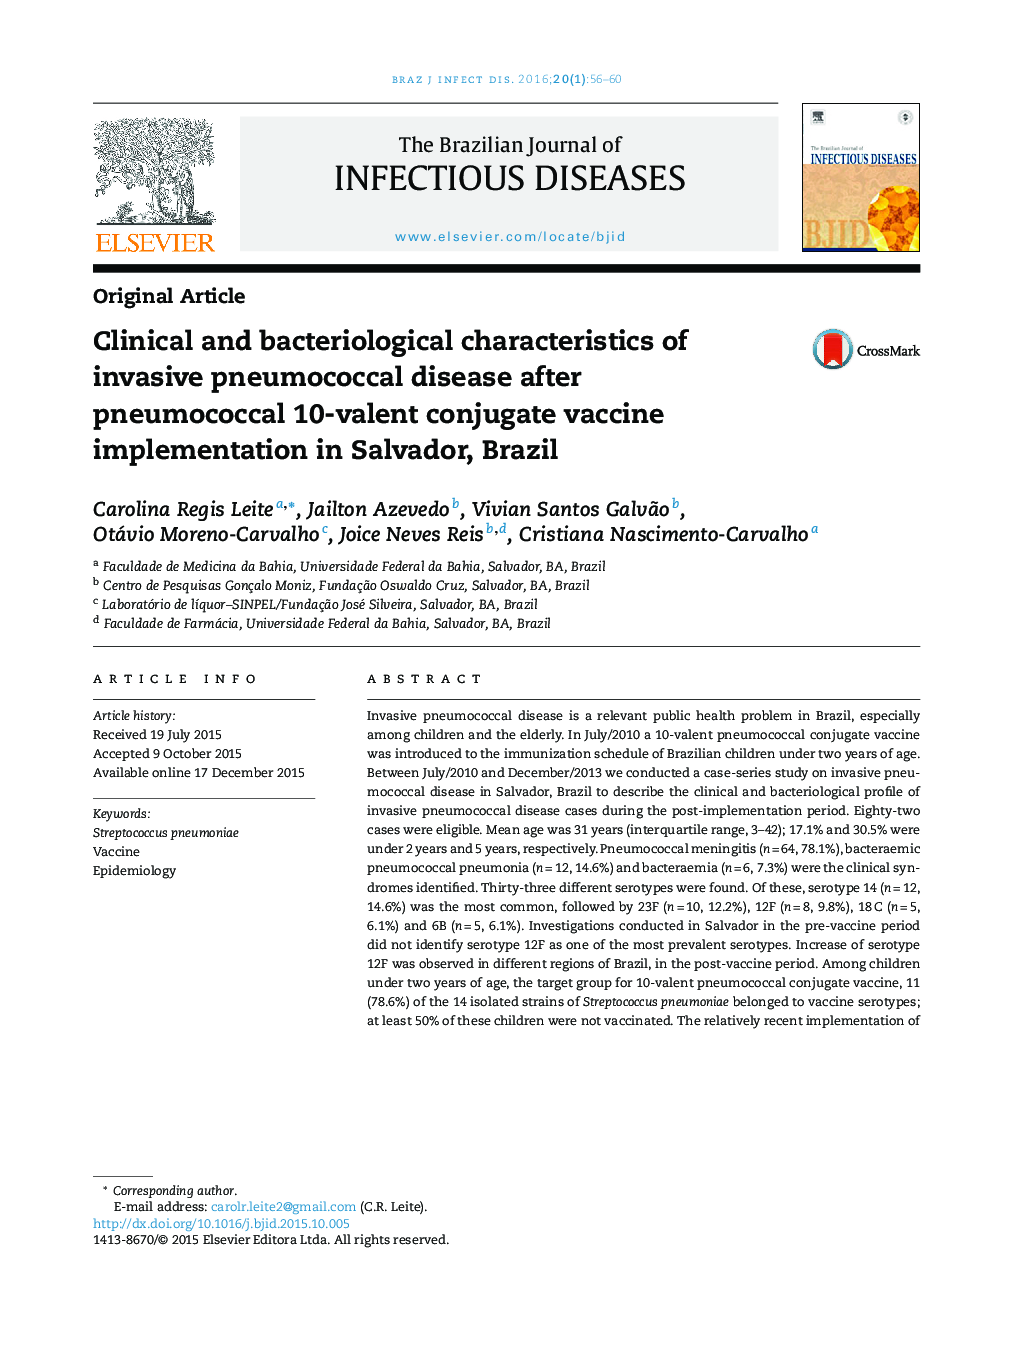 خصوصیات بالینی و باکتریولوژیک بیماری پنوموکوک مهاجم پس از اجرای واکسن پنوموکوک 10 ظرفیتی در سالوادور، برزیل